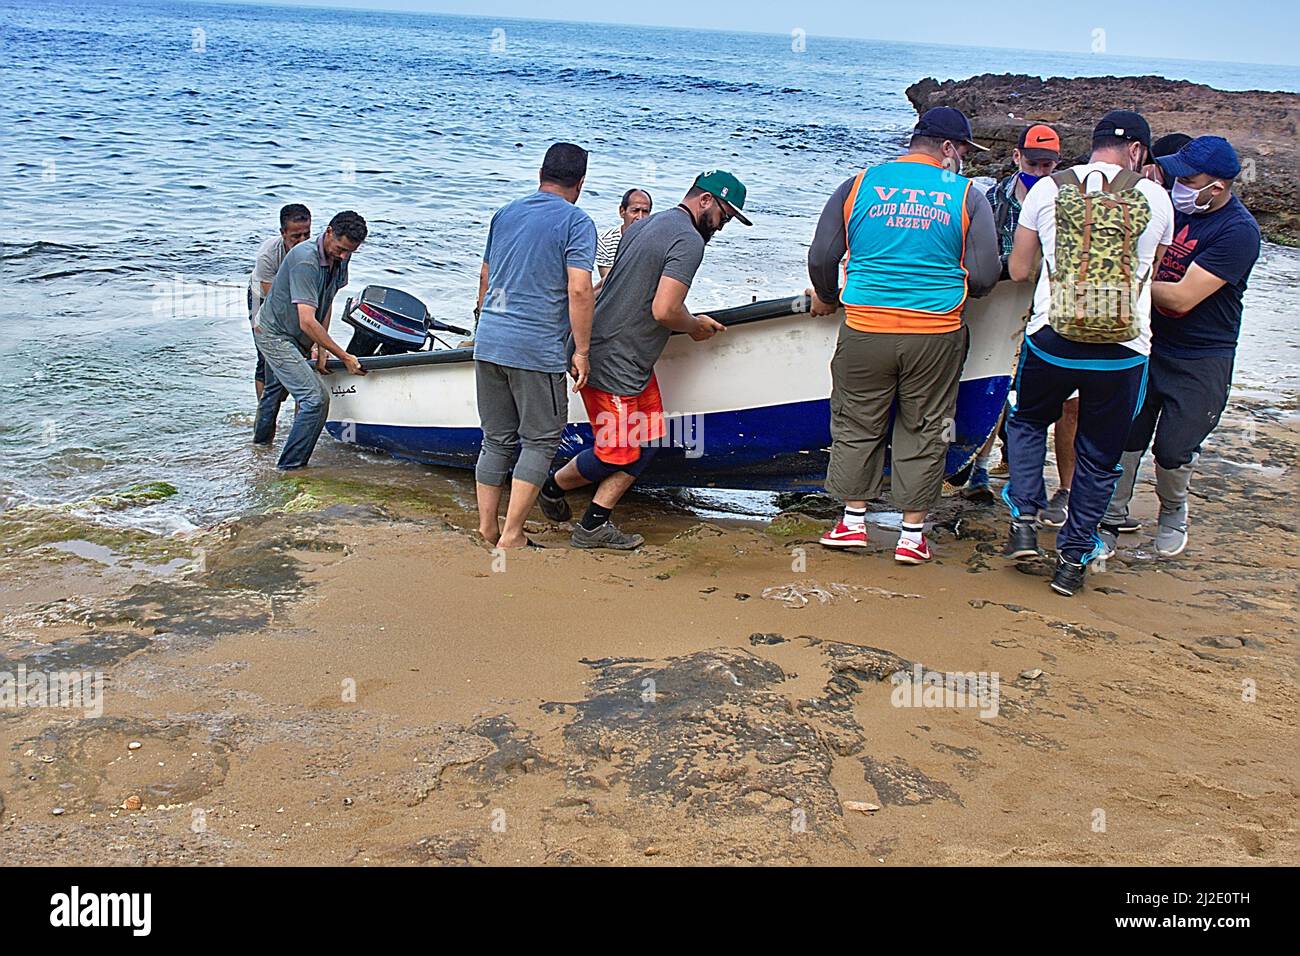 Un gruppo che aiuta i pescatori a sollevare una barca dall'acqua. Gilet del club VTT. Nome della nave Camilia in arabo. Spiaggia di Ain Defla, Gdyel, Cap d’Aiguille. Arzew. Foto Stock